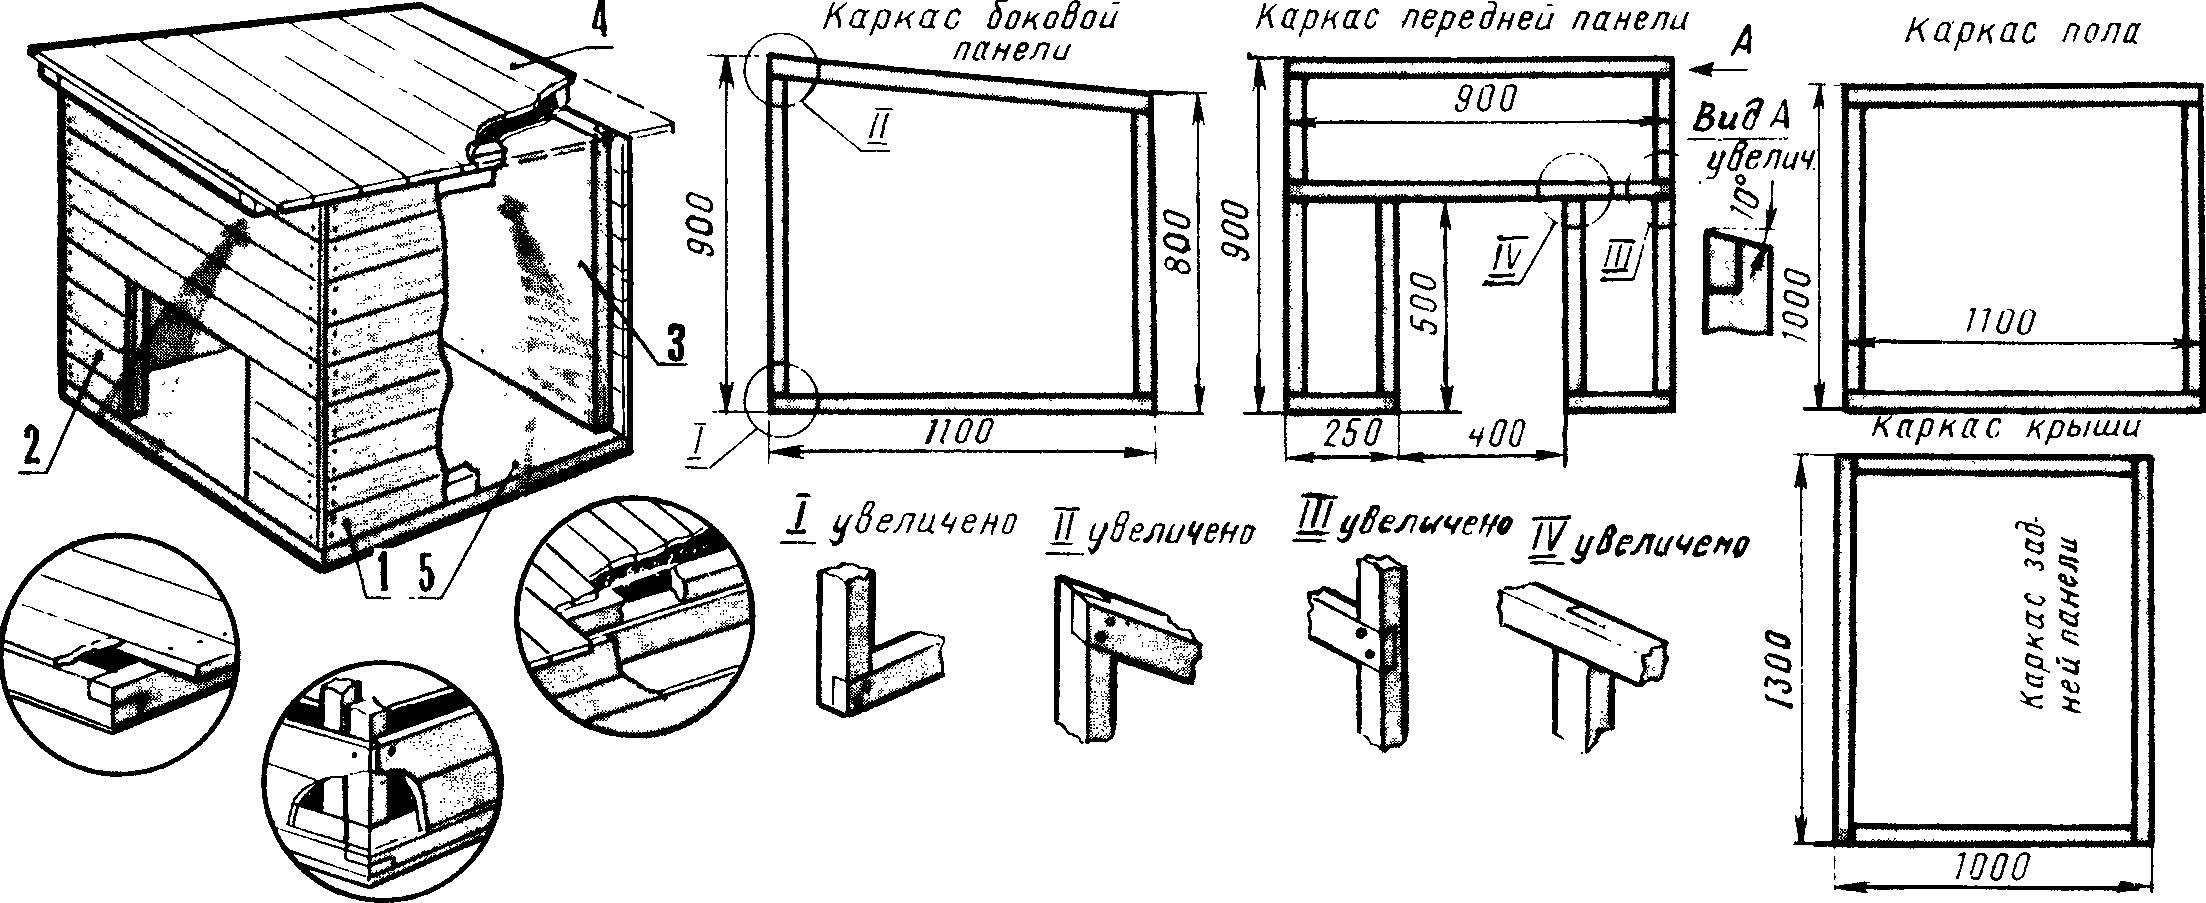 Чертежи и размеры вольера и будки для восточноевропейской овчарки, инструкция по постройке конуры своими руками (фото)